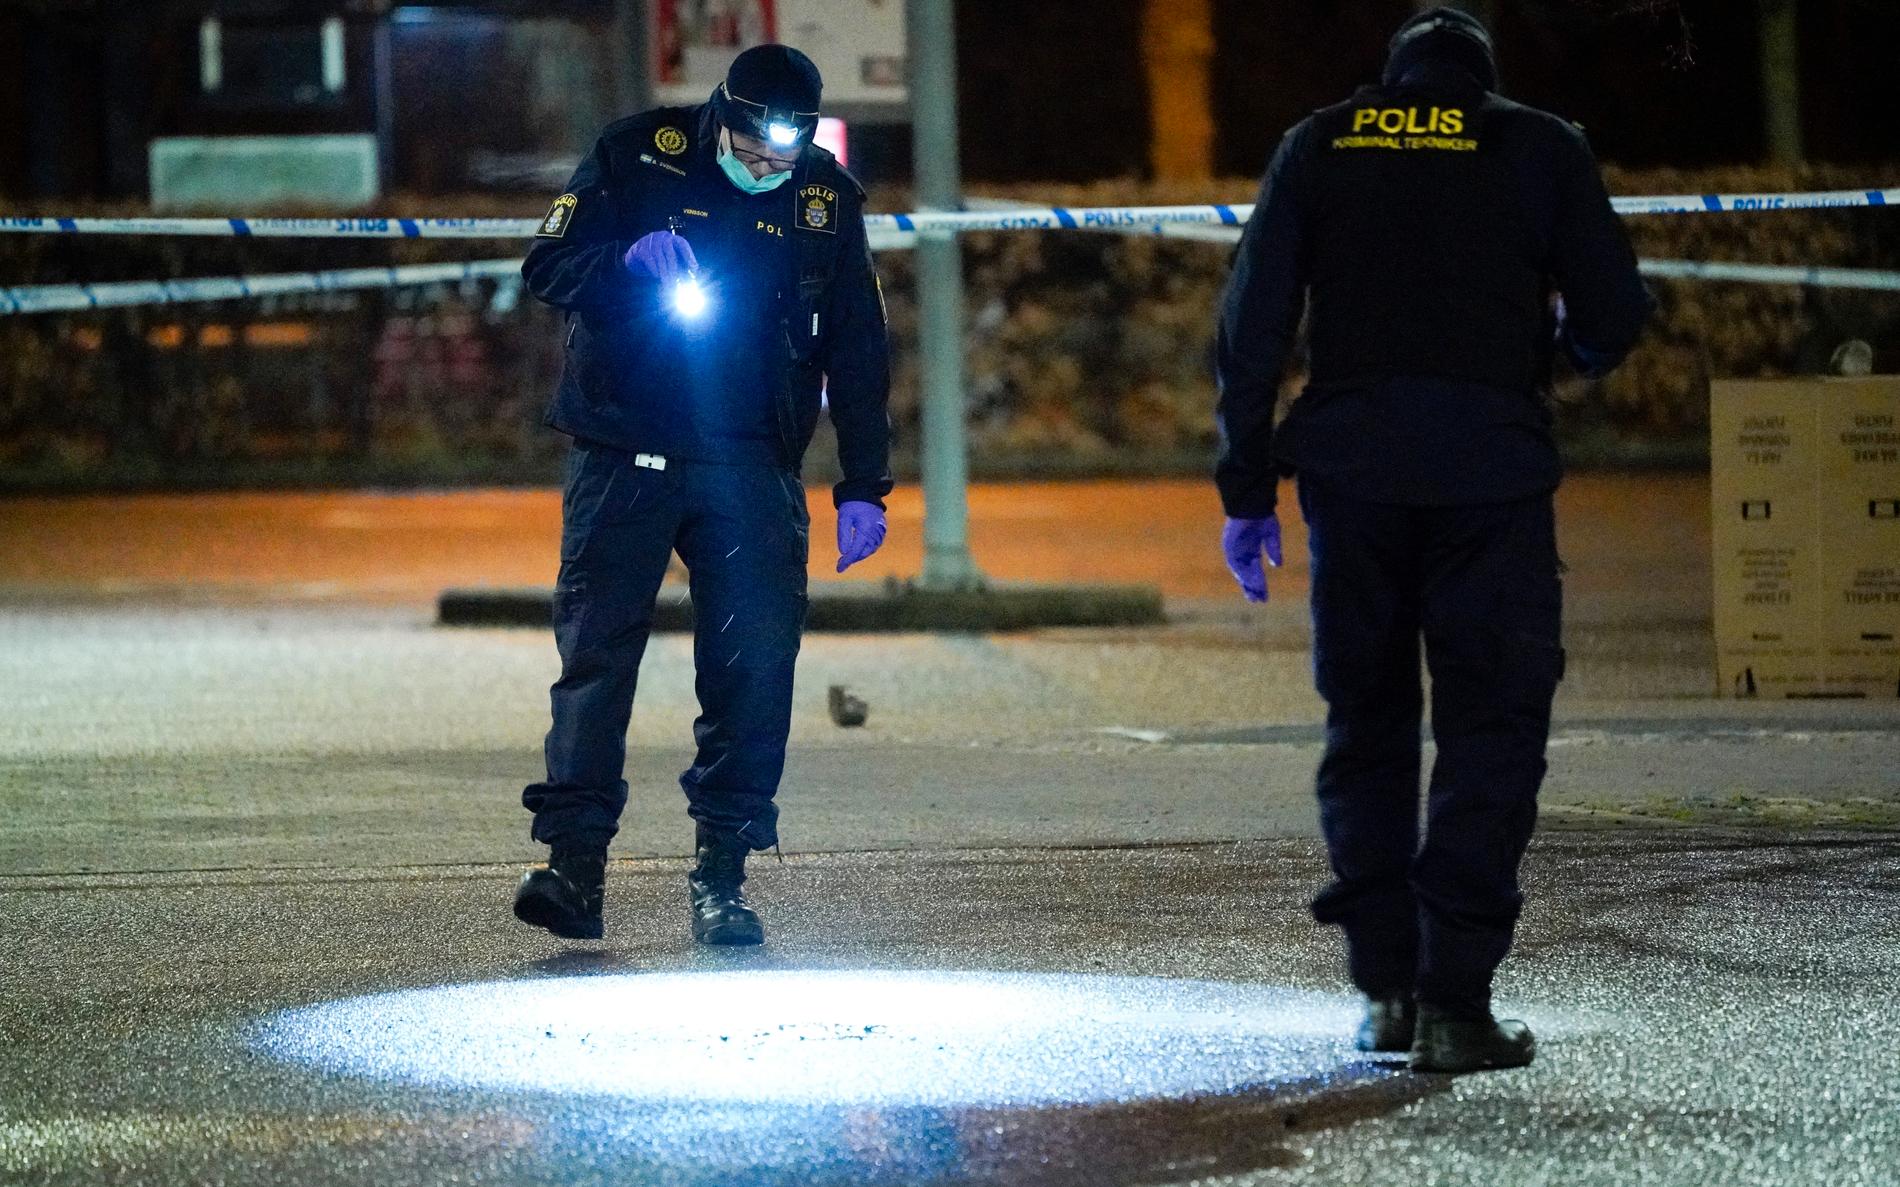 Polisens kriminaltekniker undersöker en brottsplats i Helsingborg där en man hittats med stickskador.